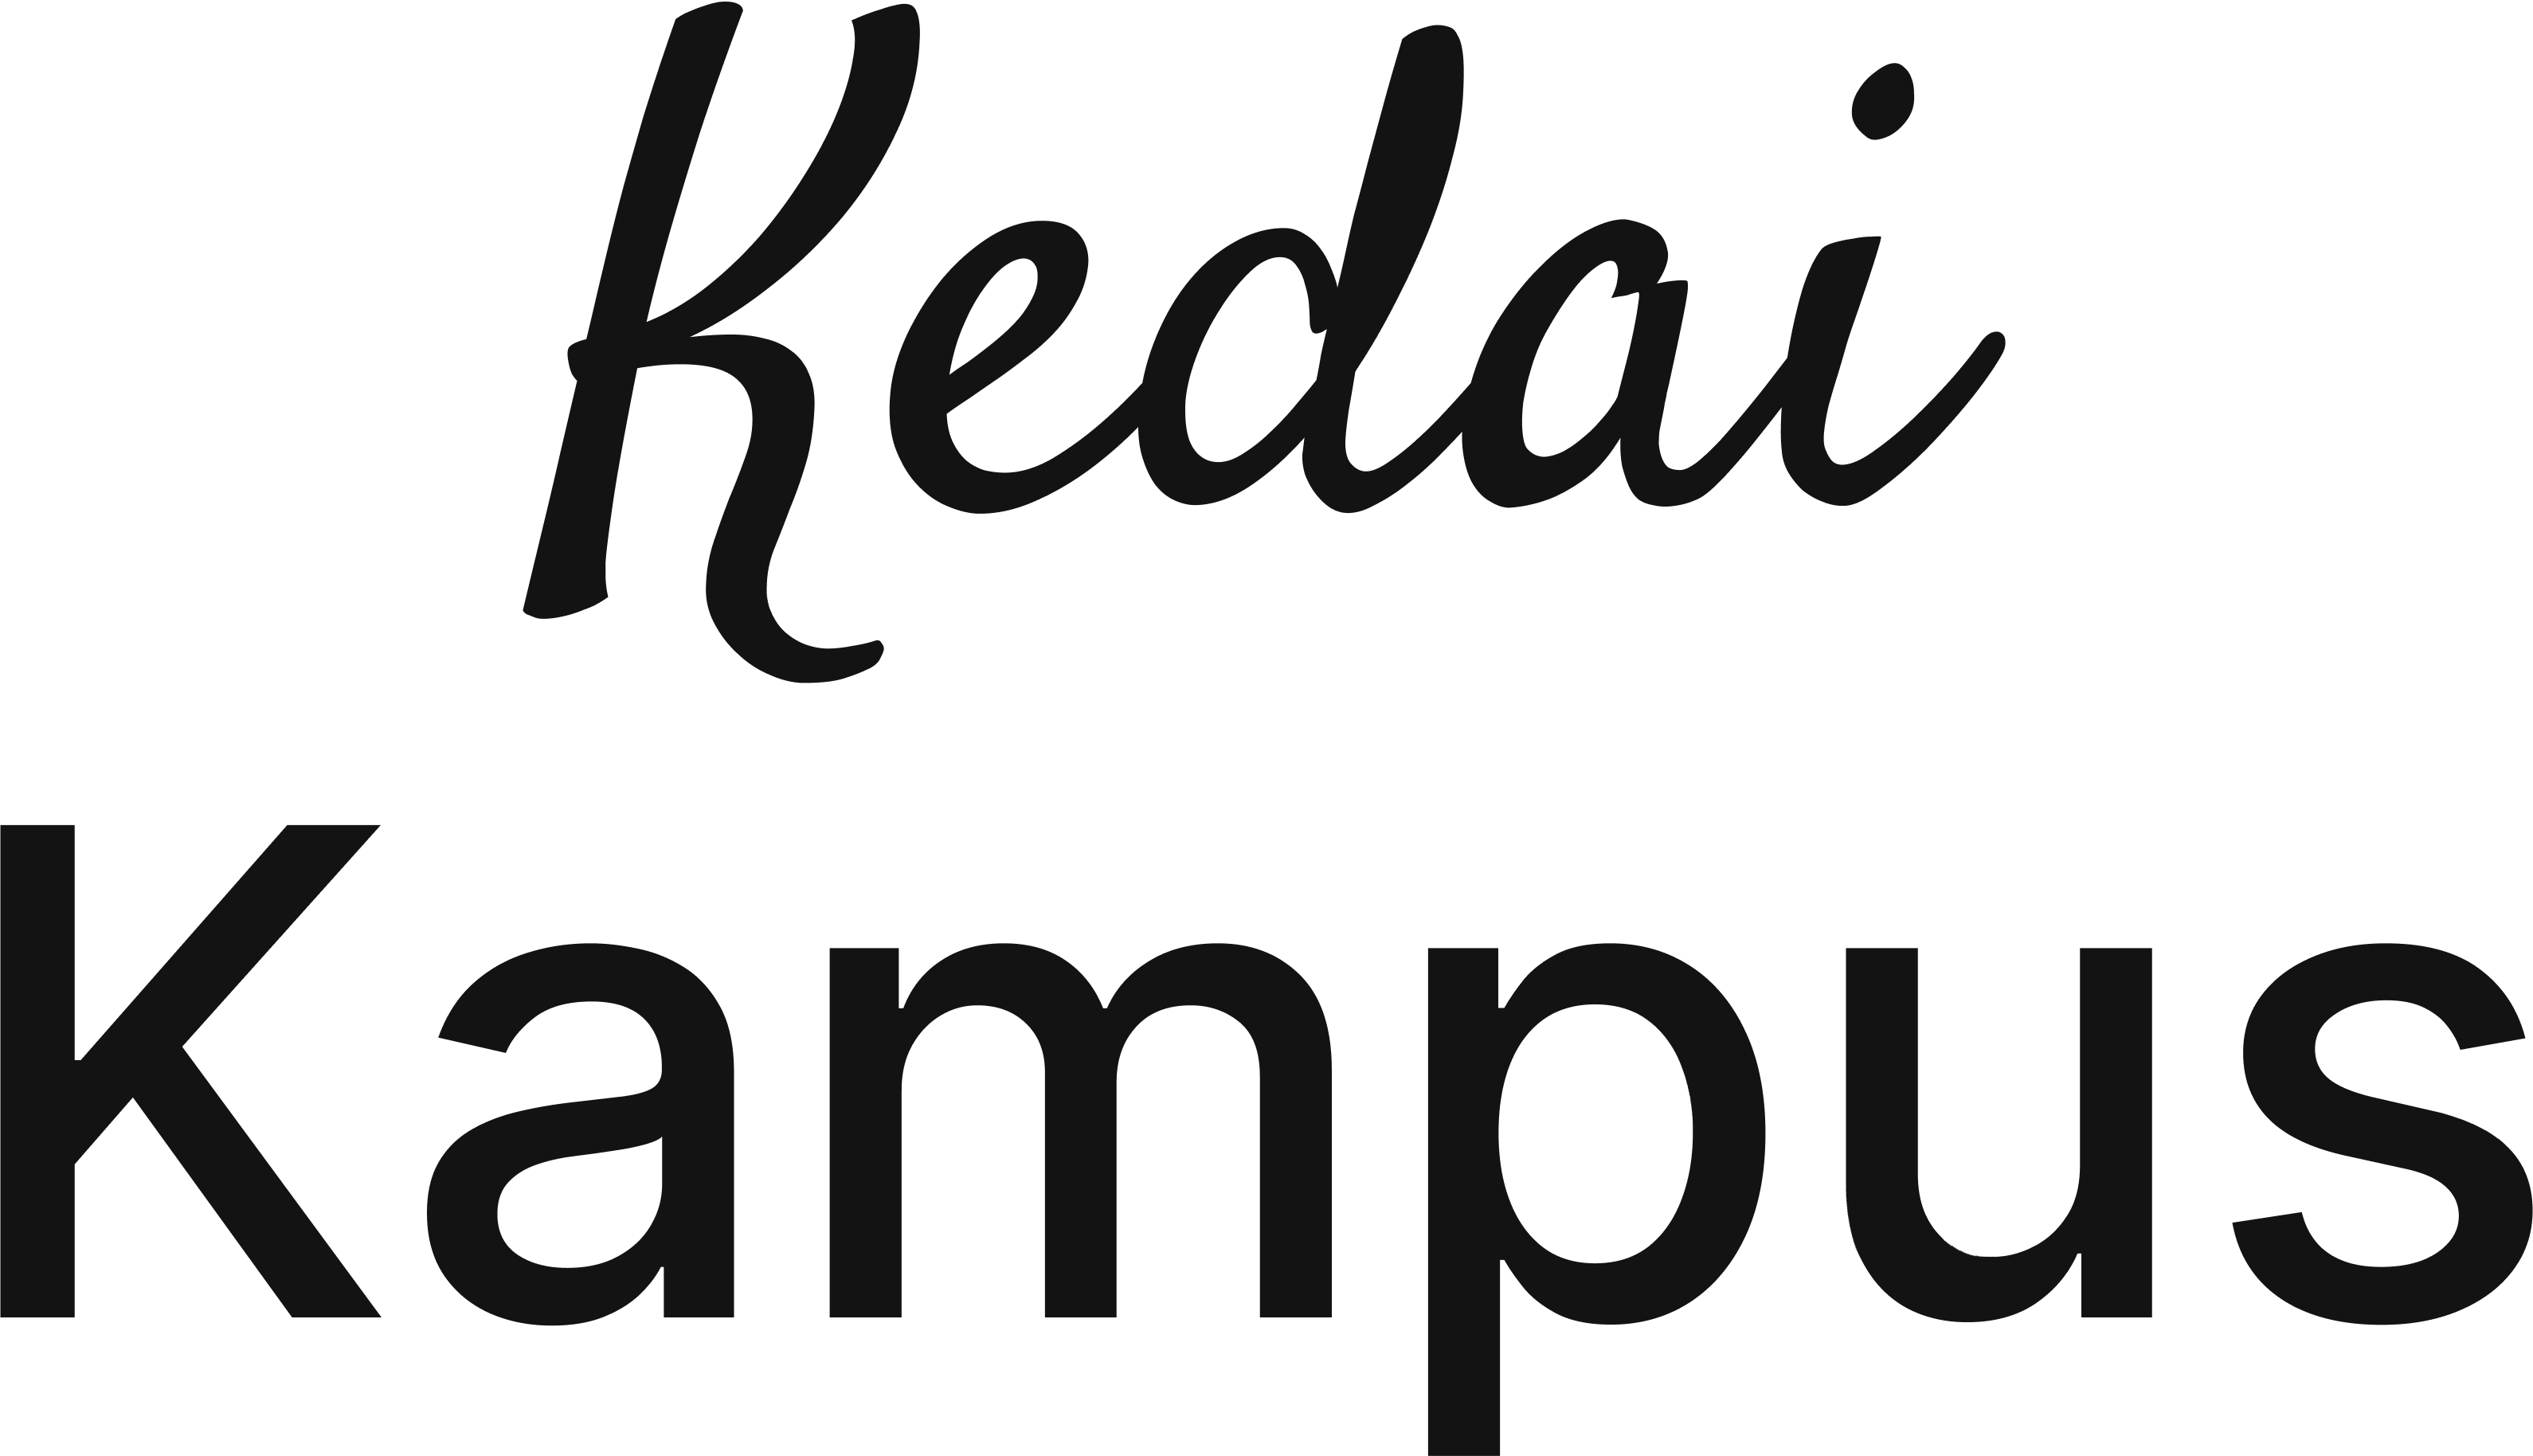 kedai kampus logo